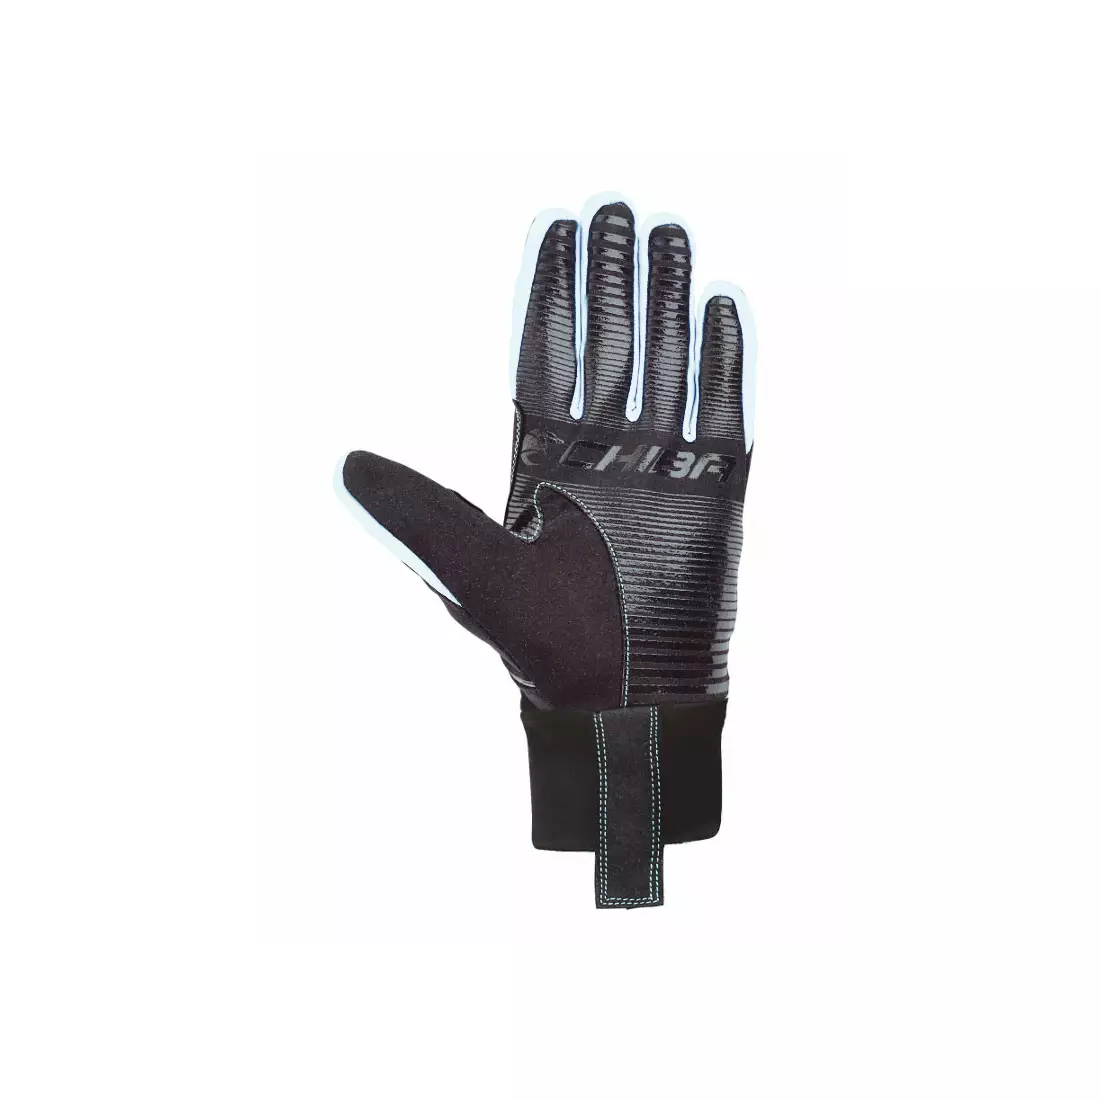 CHIBA CROSS WINDSTOPPER - zimní rukavice, černo-bílé 31517